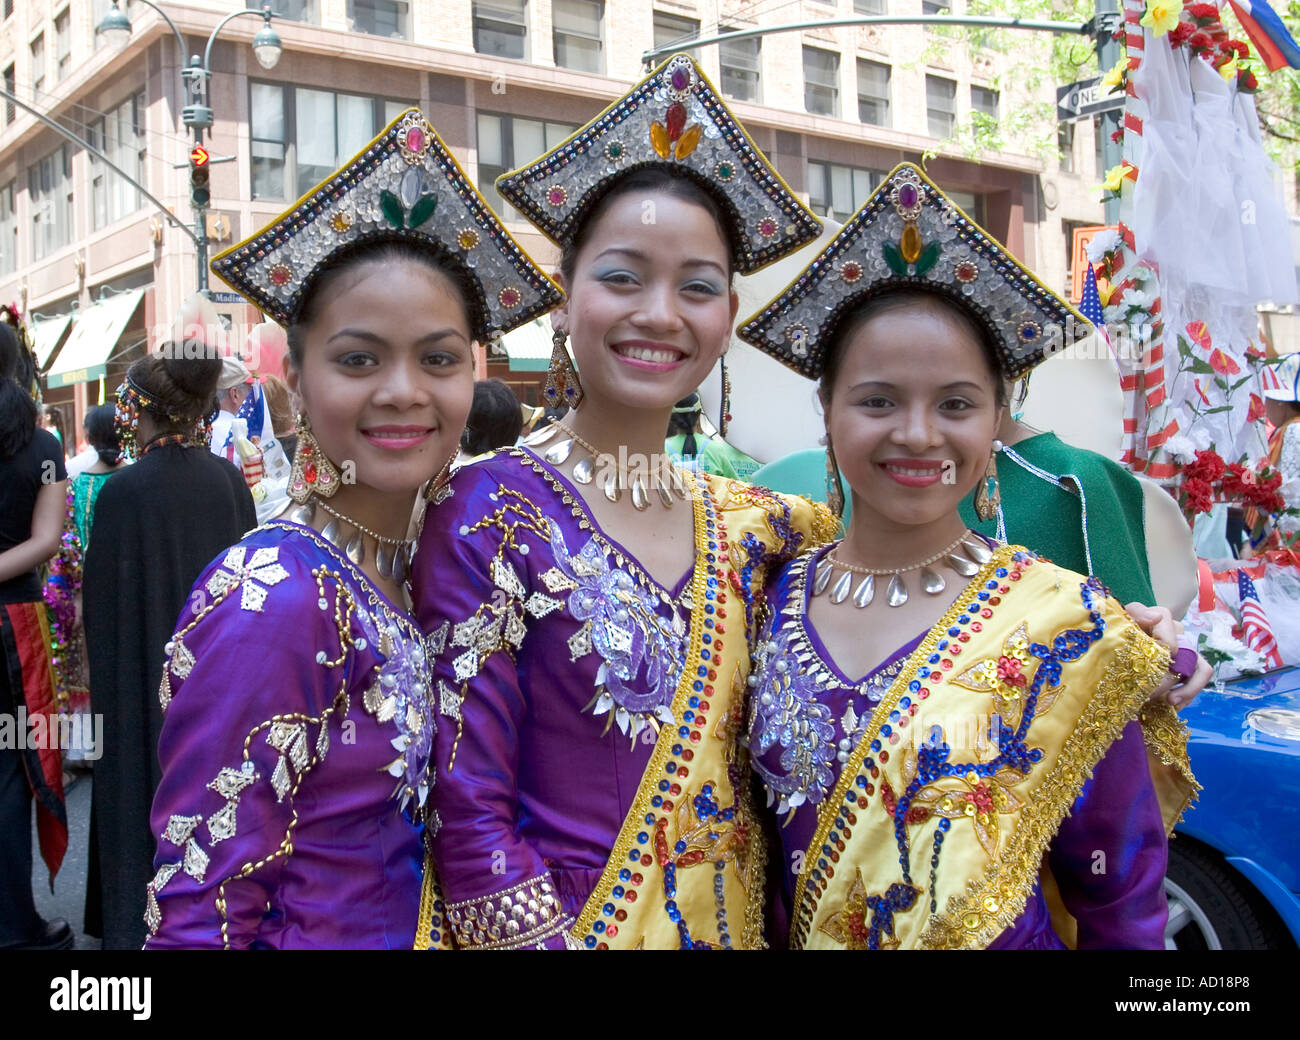 Costumi Tradizionali Filippine Immagini e Fotos Stock - Alamy